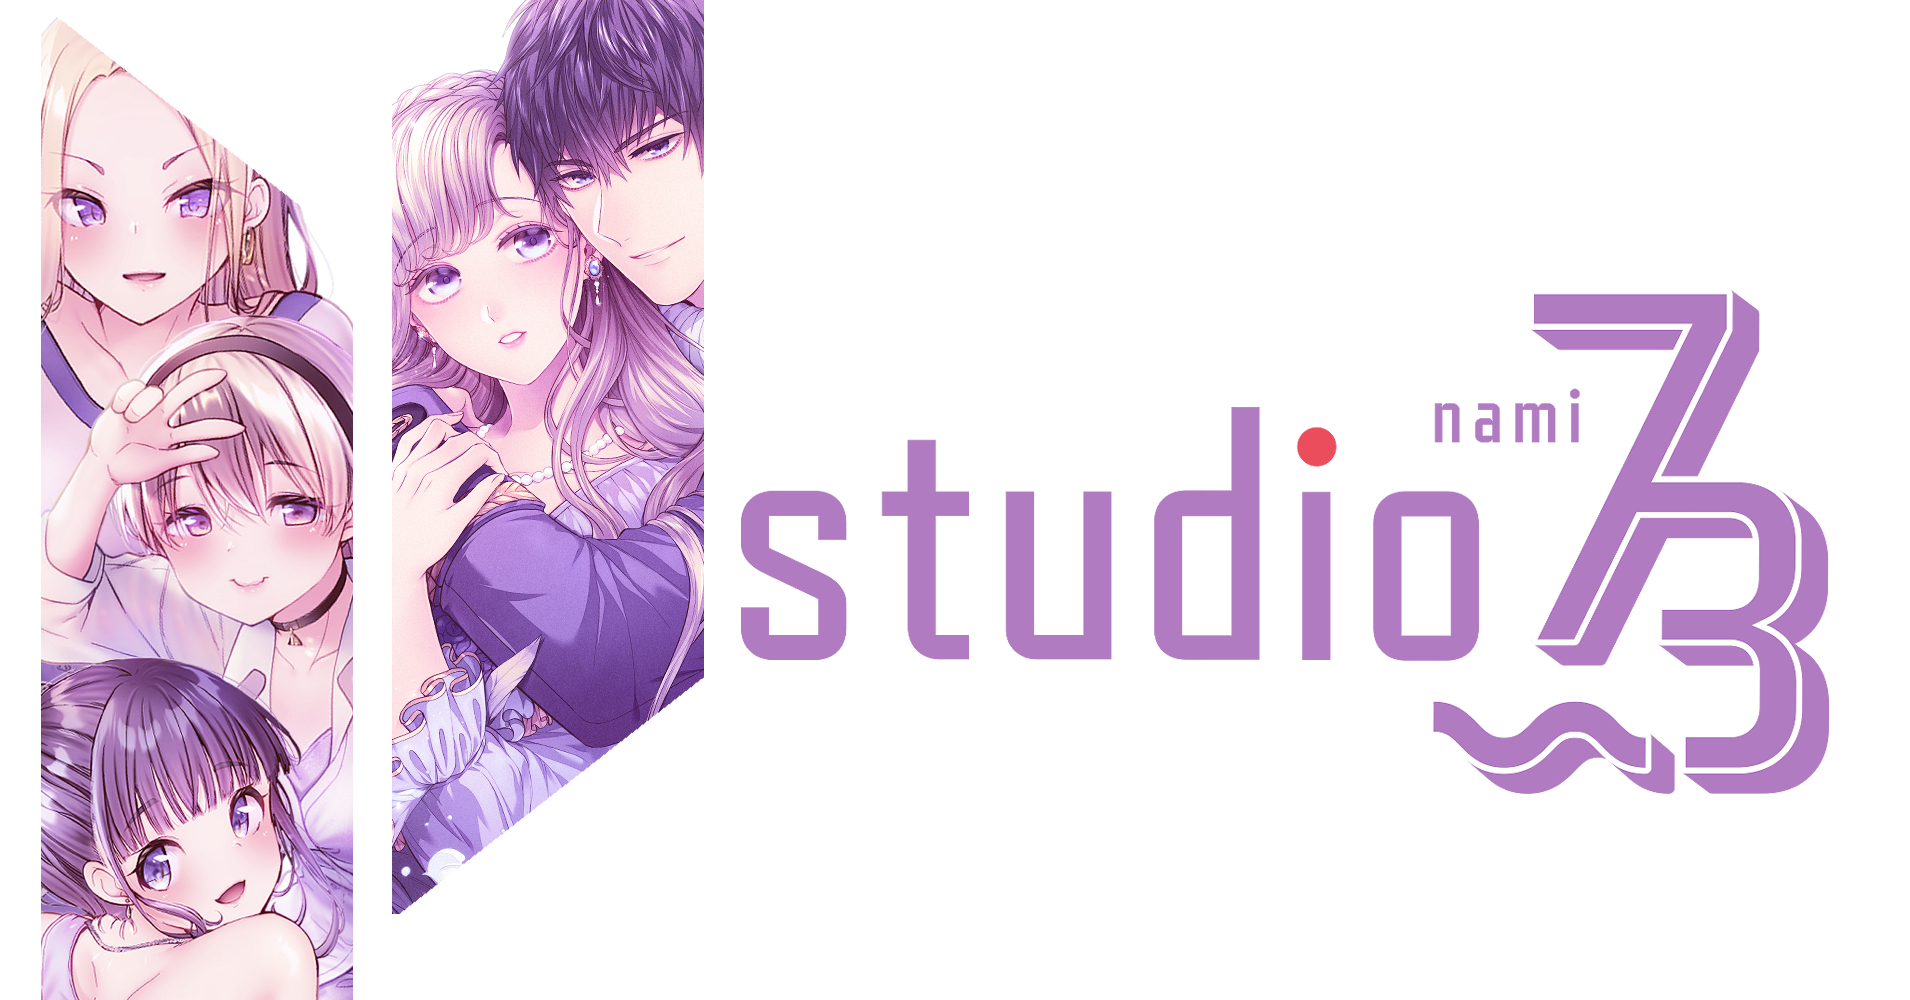 2022年3月にWebtoon制作スタジオ「studio73」を設立いたしました。